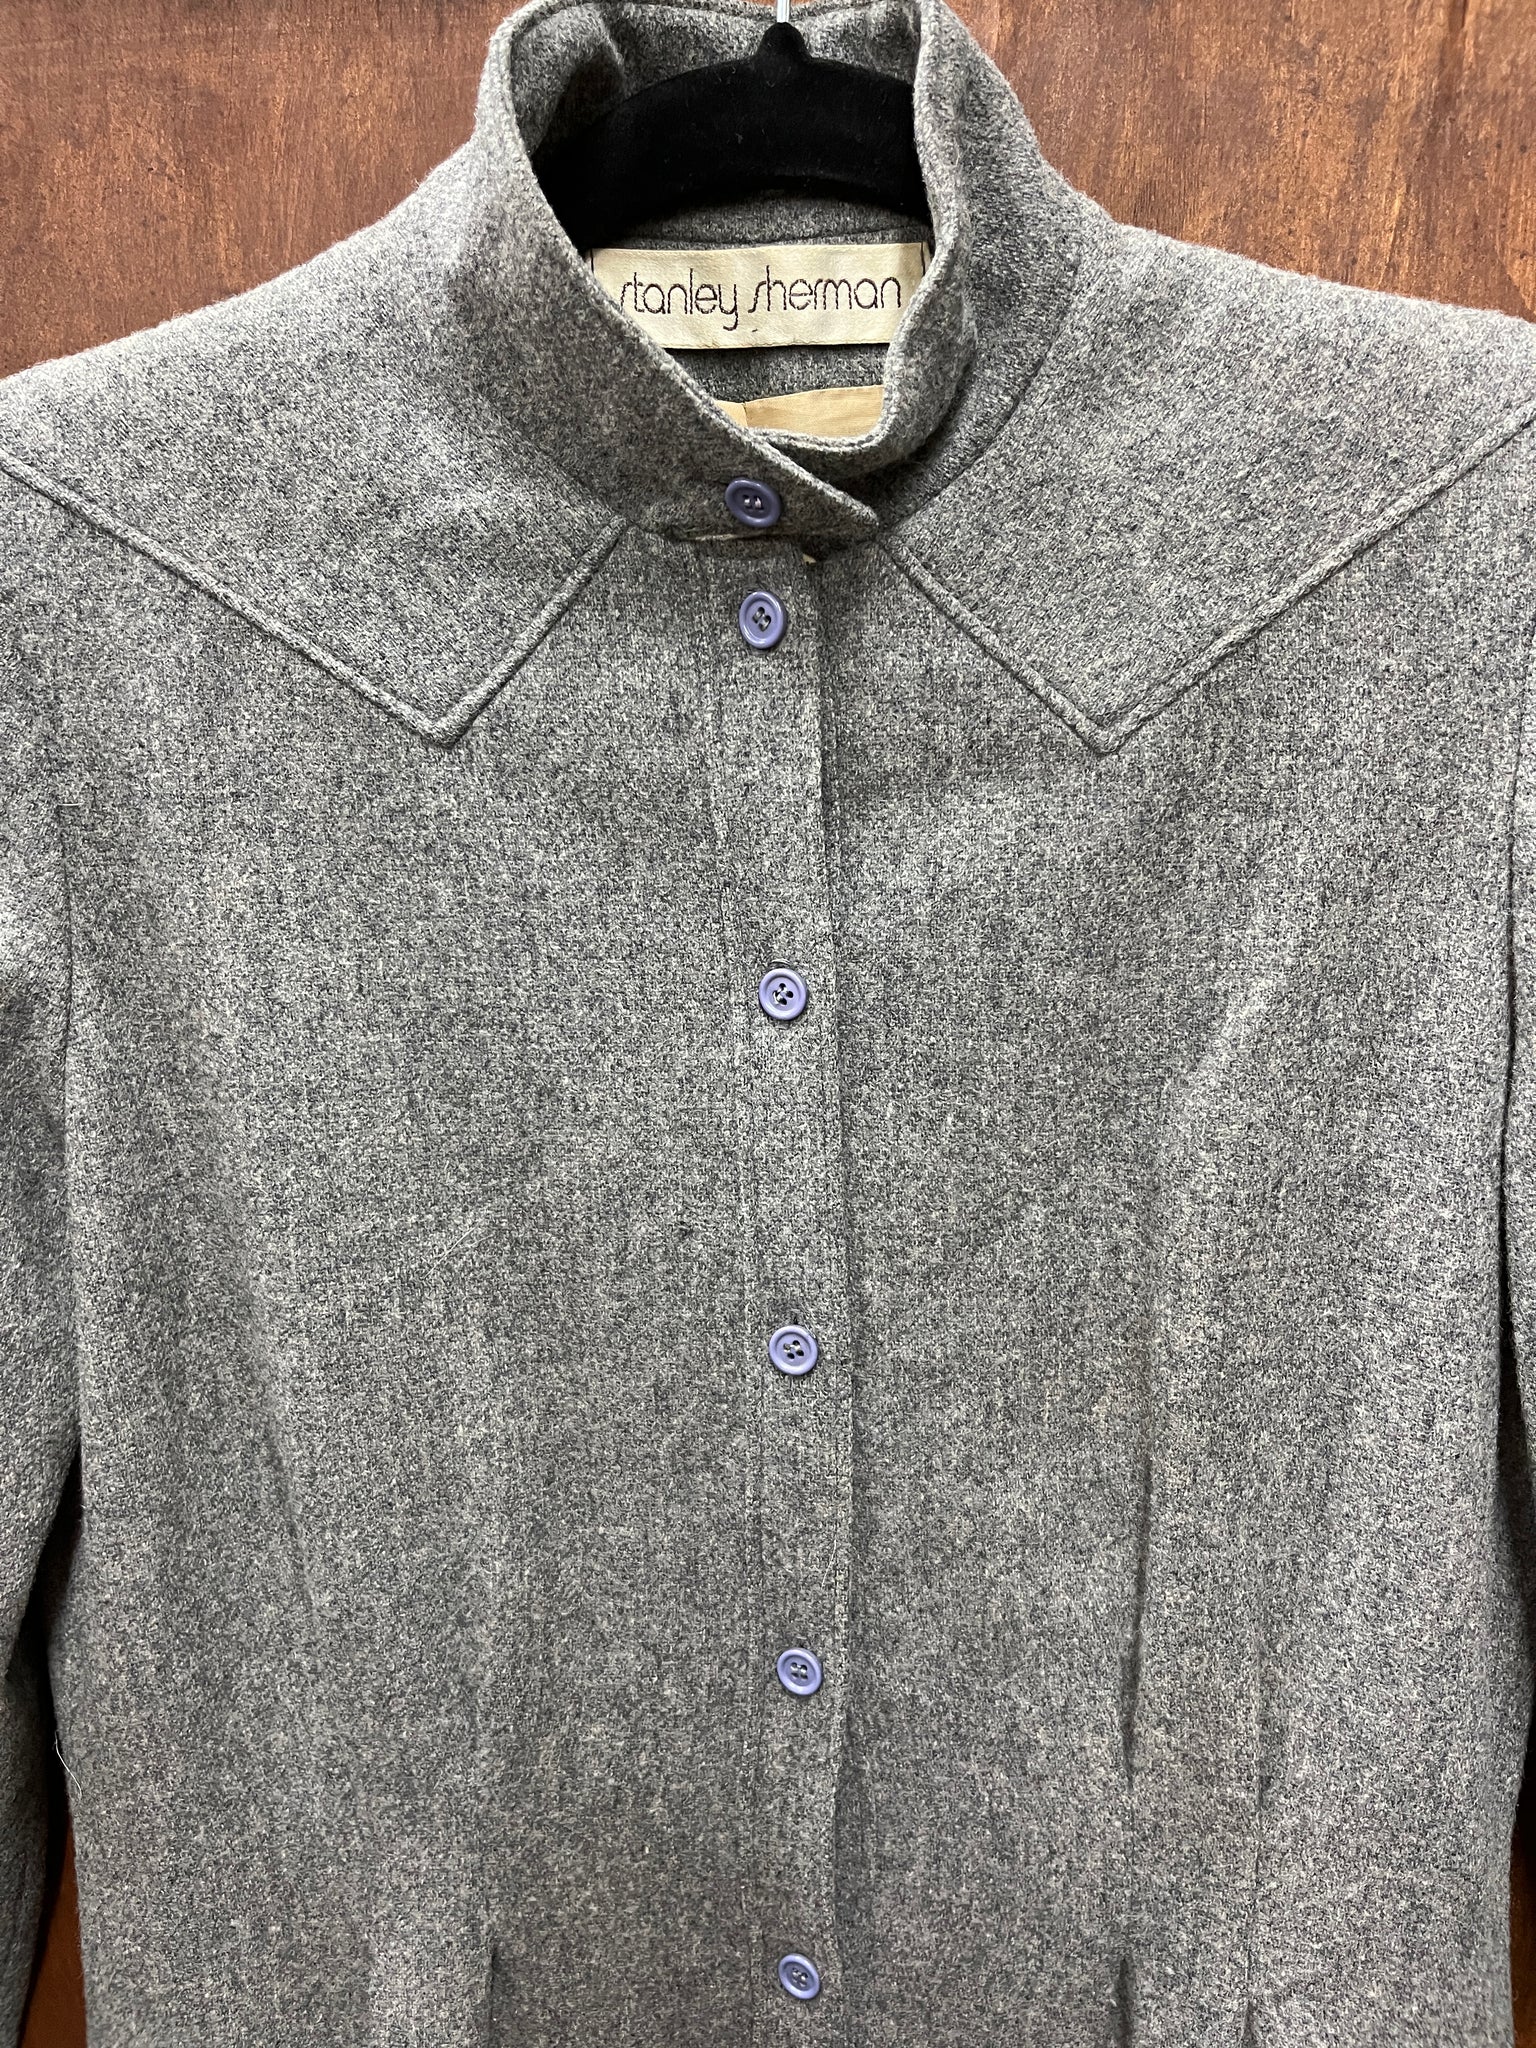 1980s DRESS- Stanley Sherman grey wool coat style